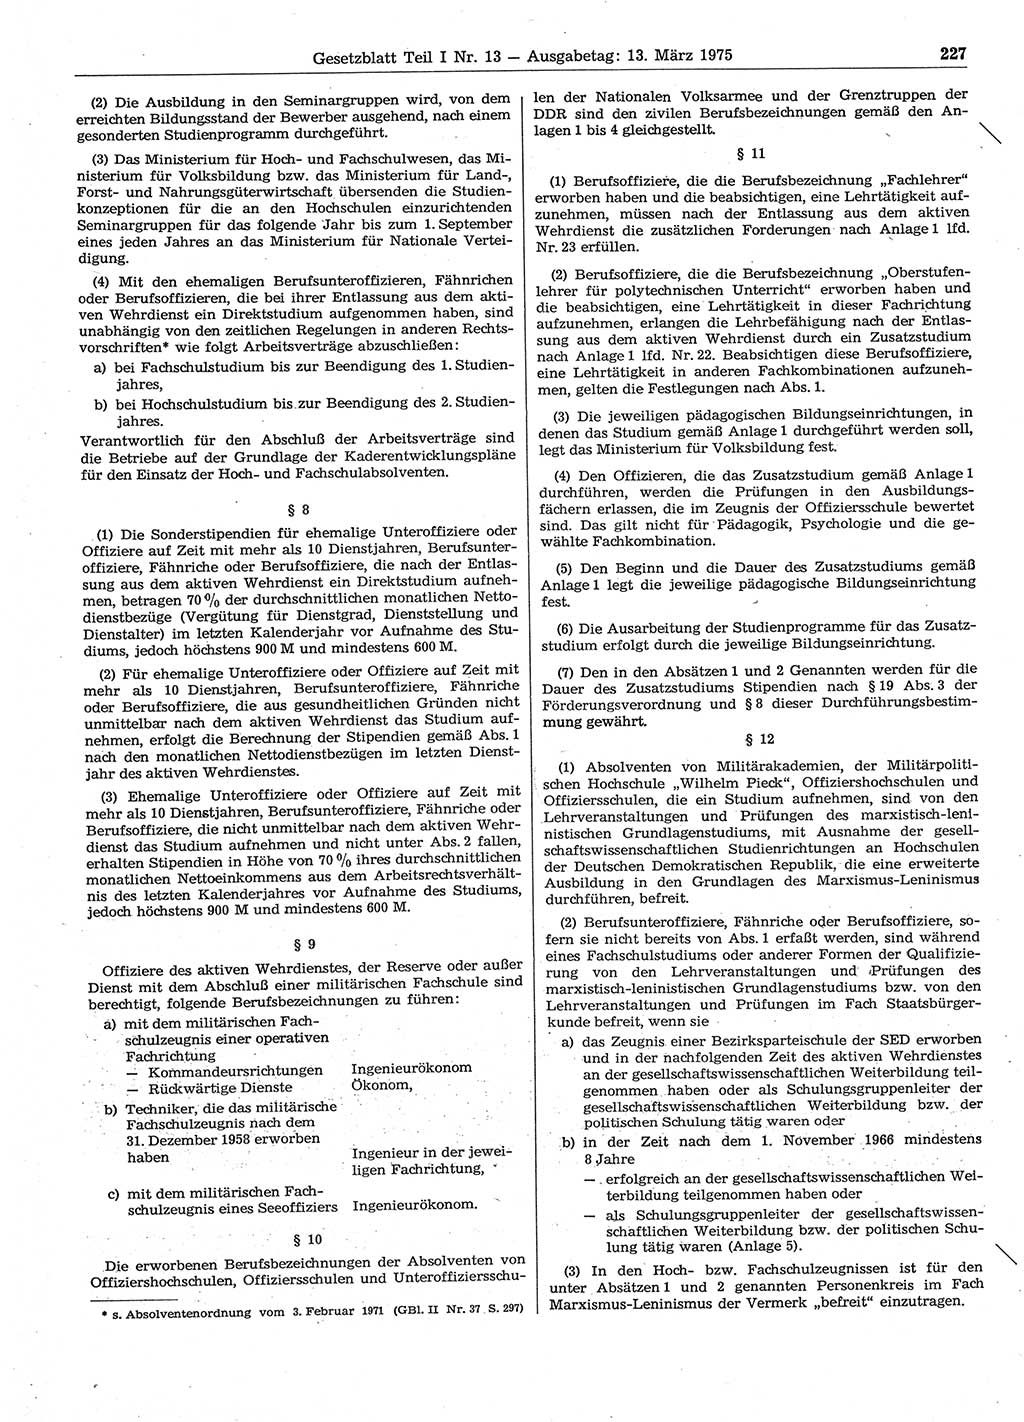 Gesetzblatt (GBl.) der Deutschen Demokratischen Republik (DDR) Teil Ⅰ 1975, Seite 227 (GBl. DDR Ⅰ 1975, S. 227)